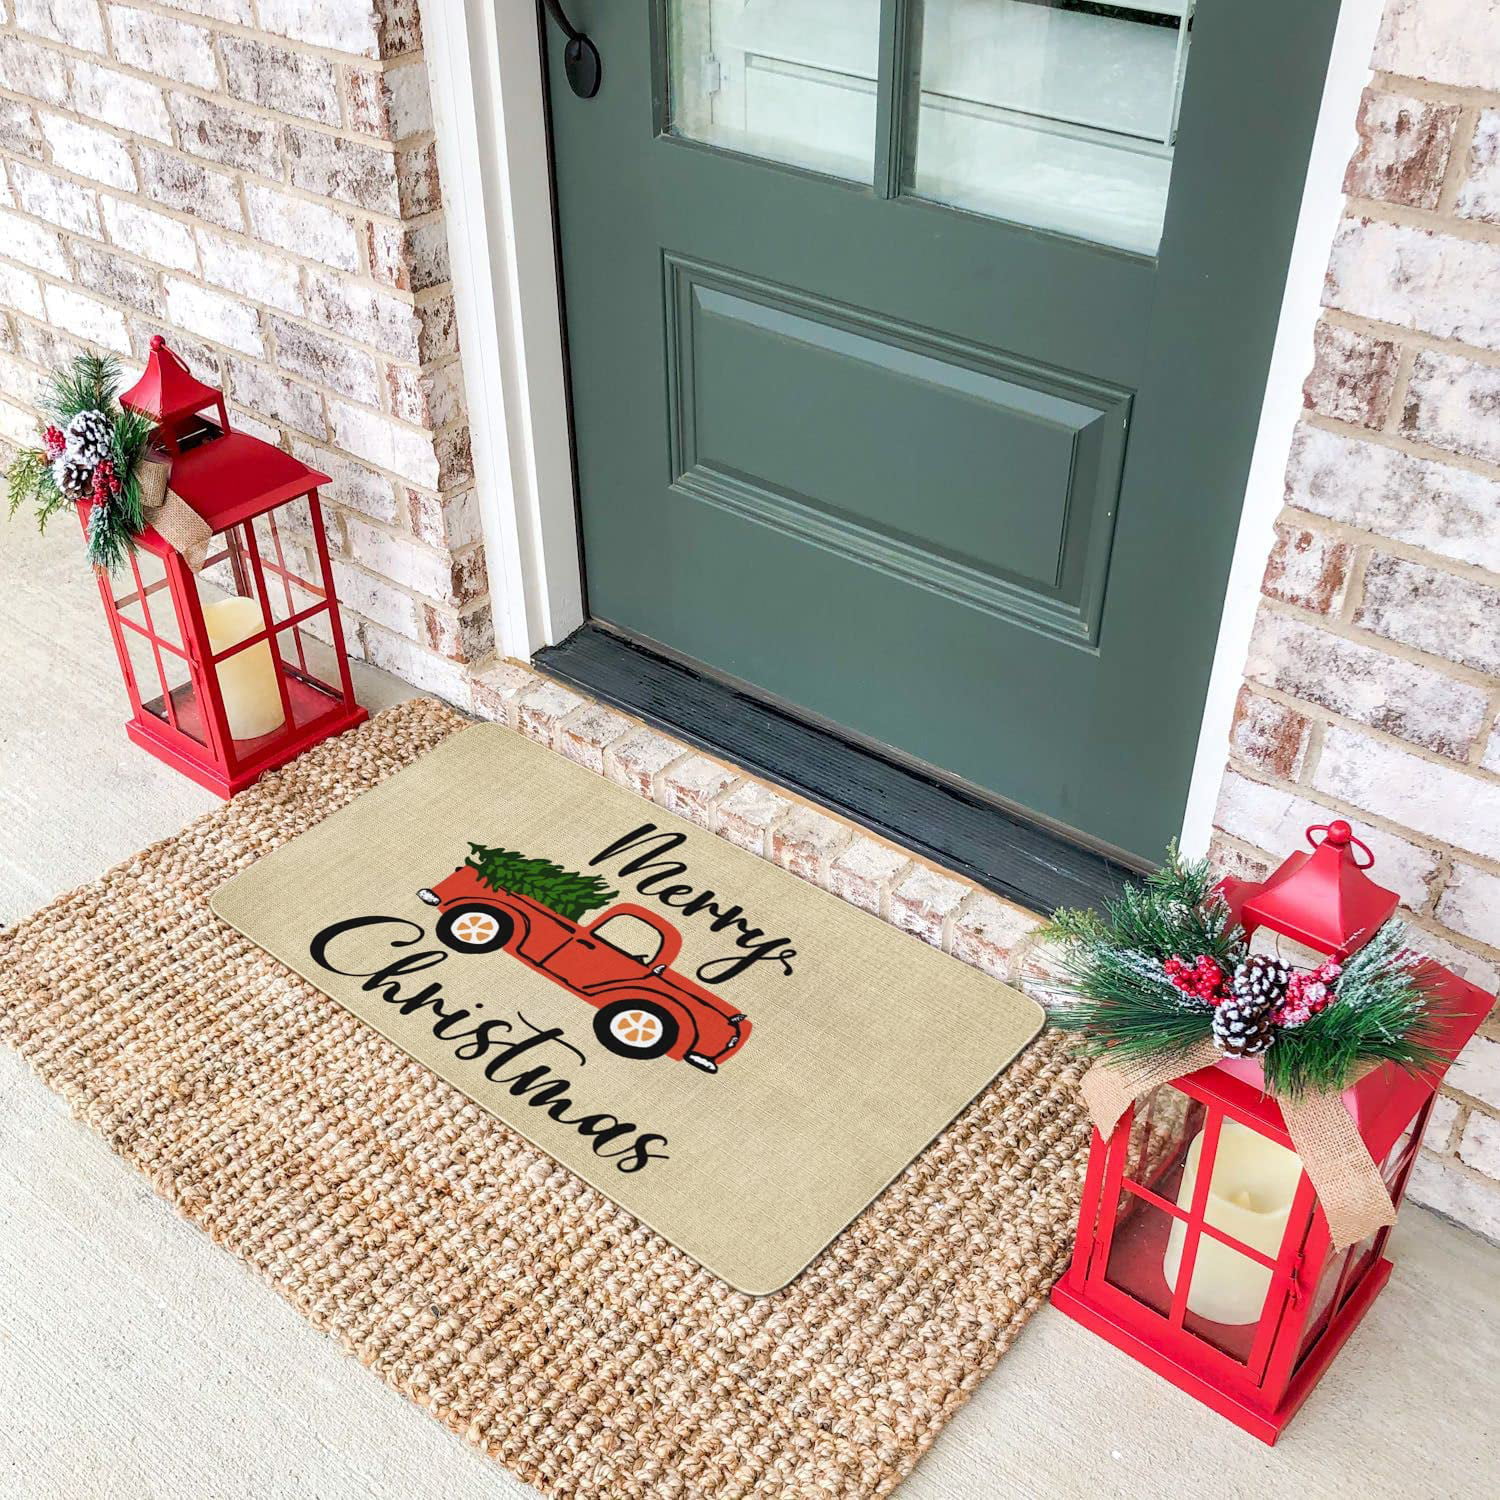 Christmas Doormat for Front Porch, Winter Doormat, Holiday Hostess Gift, Front  Door Mat, Holiday Door Mat, Christmas Decor Outdoor 